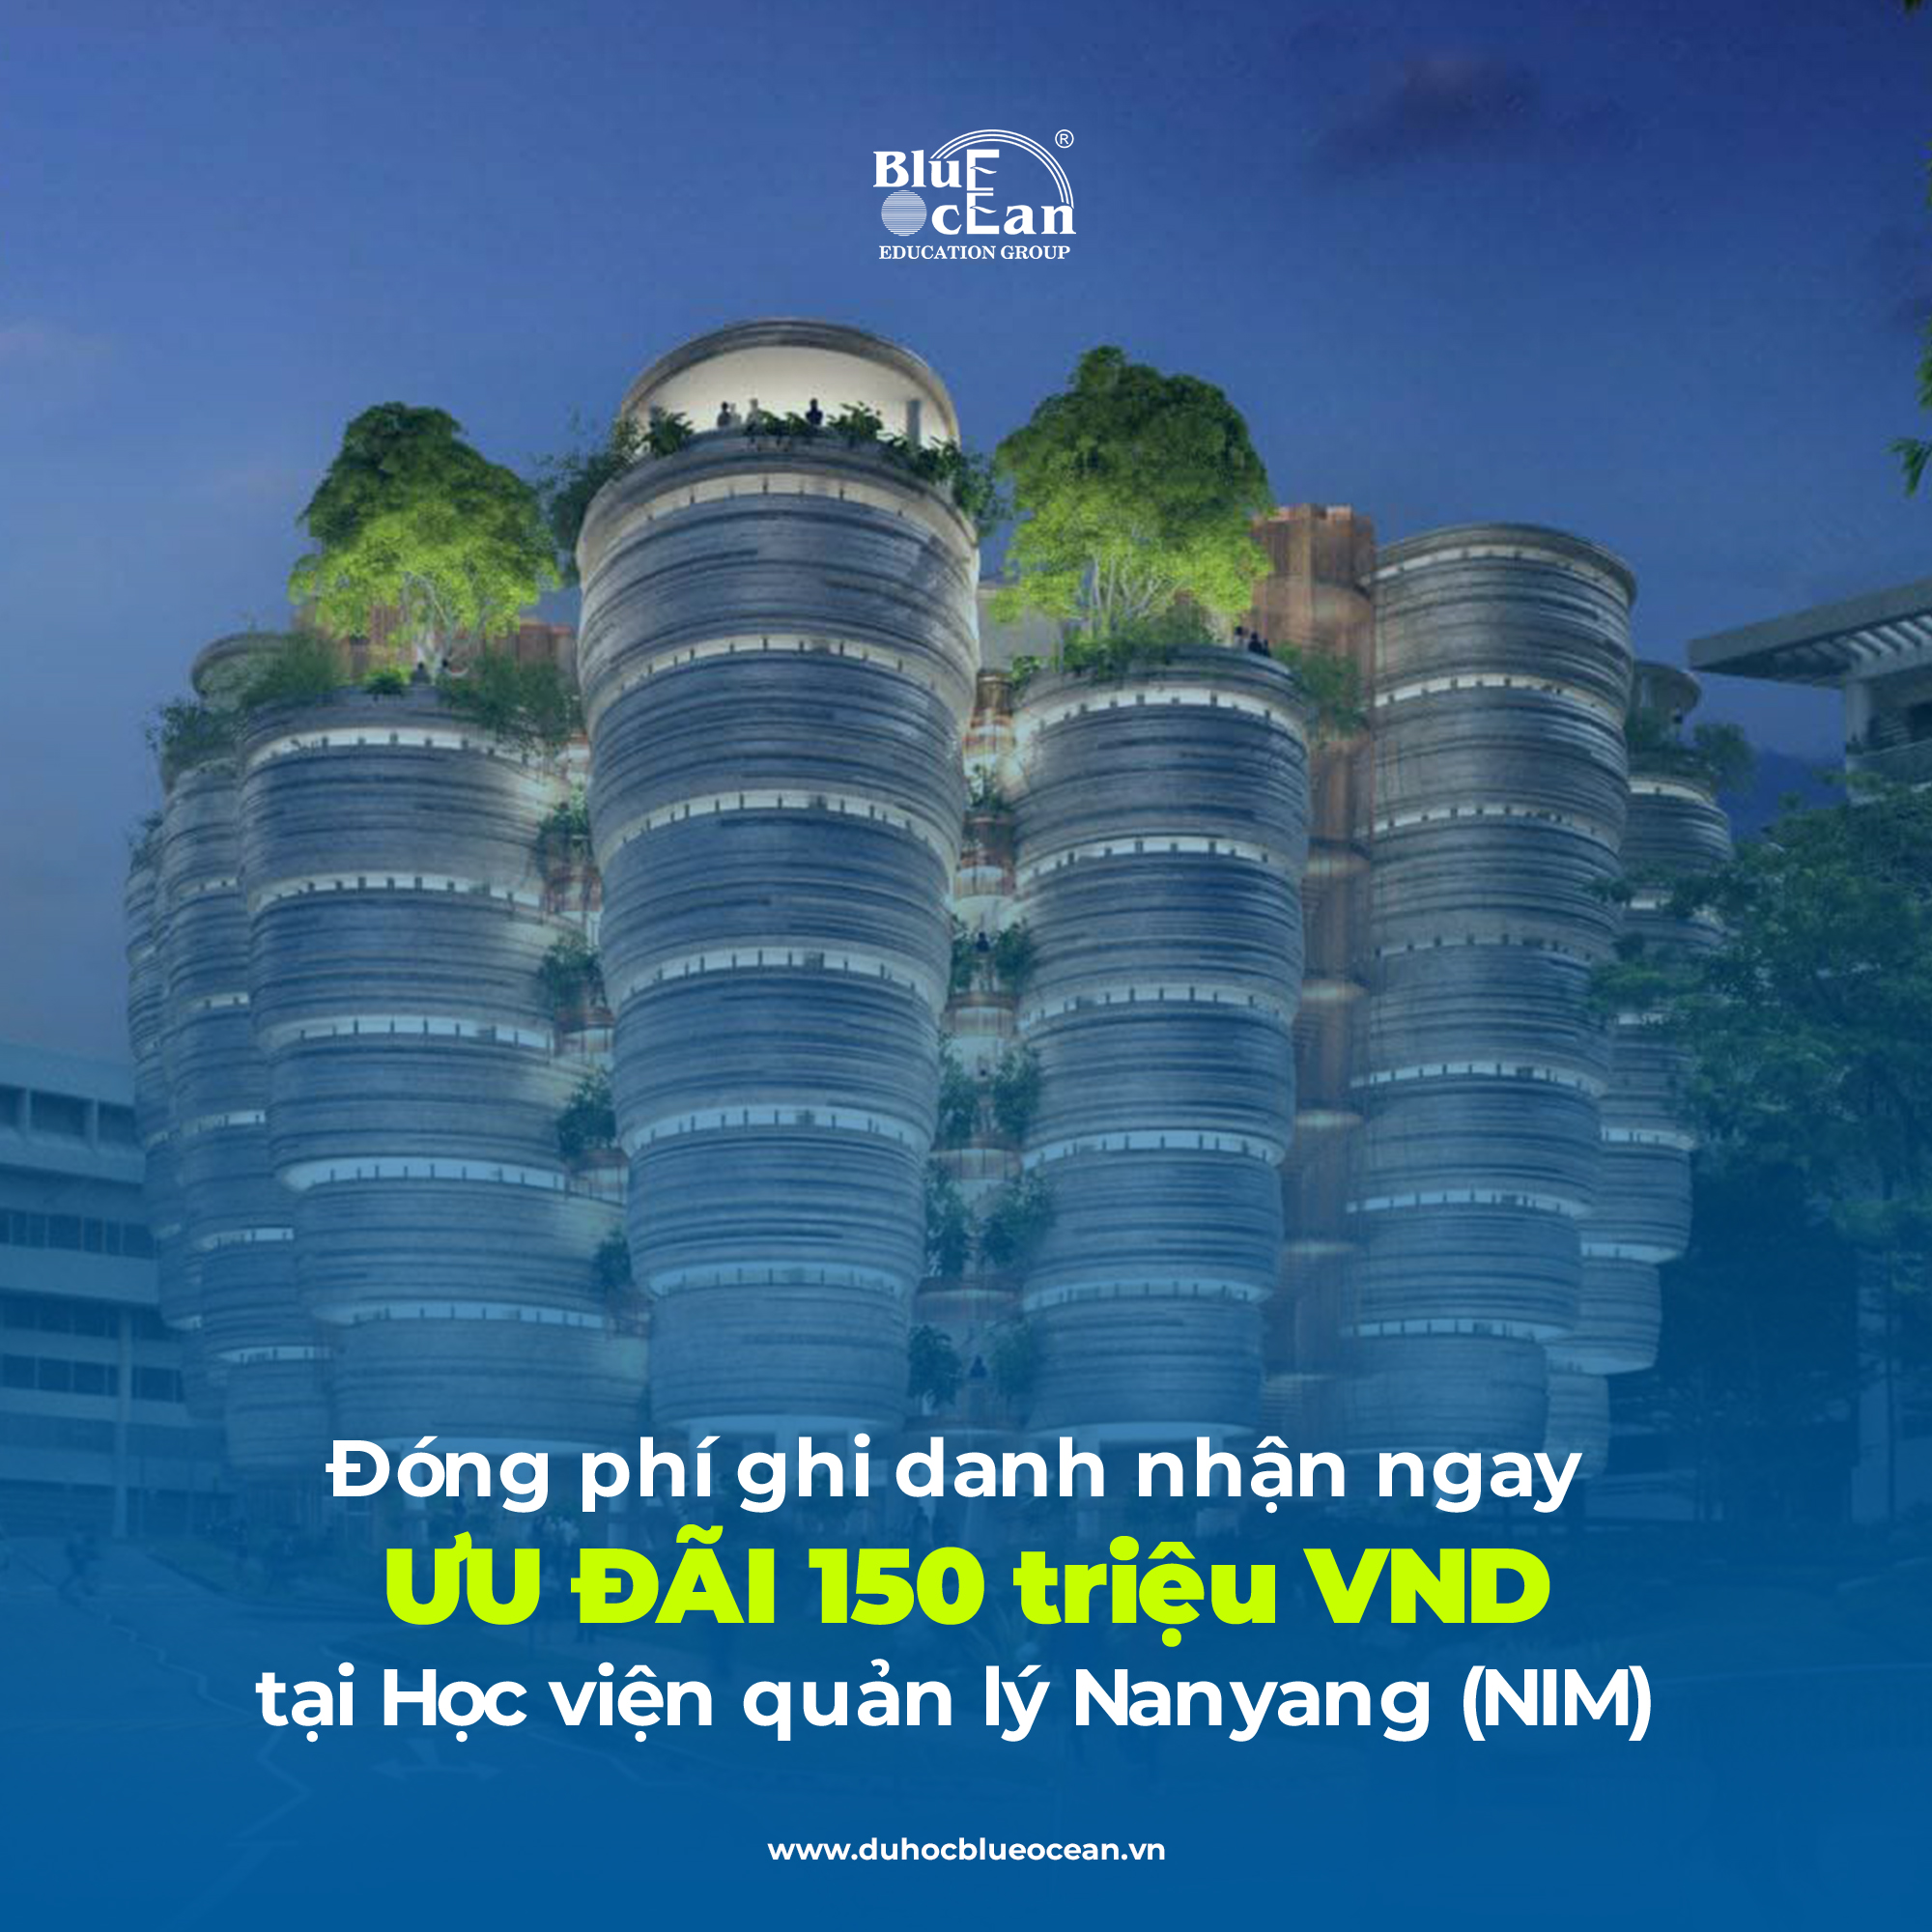 Học viện quản lý Nanyang (NIM) - Đóng phí ghi danh nhận ngay ưu đãi lên đến 150 triệu VND